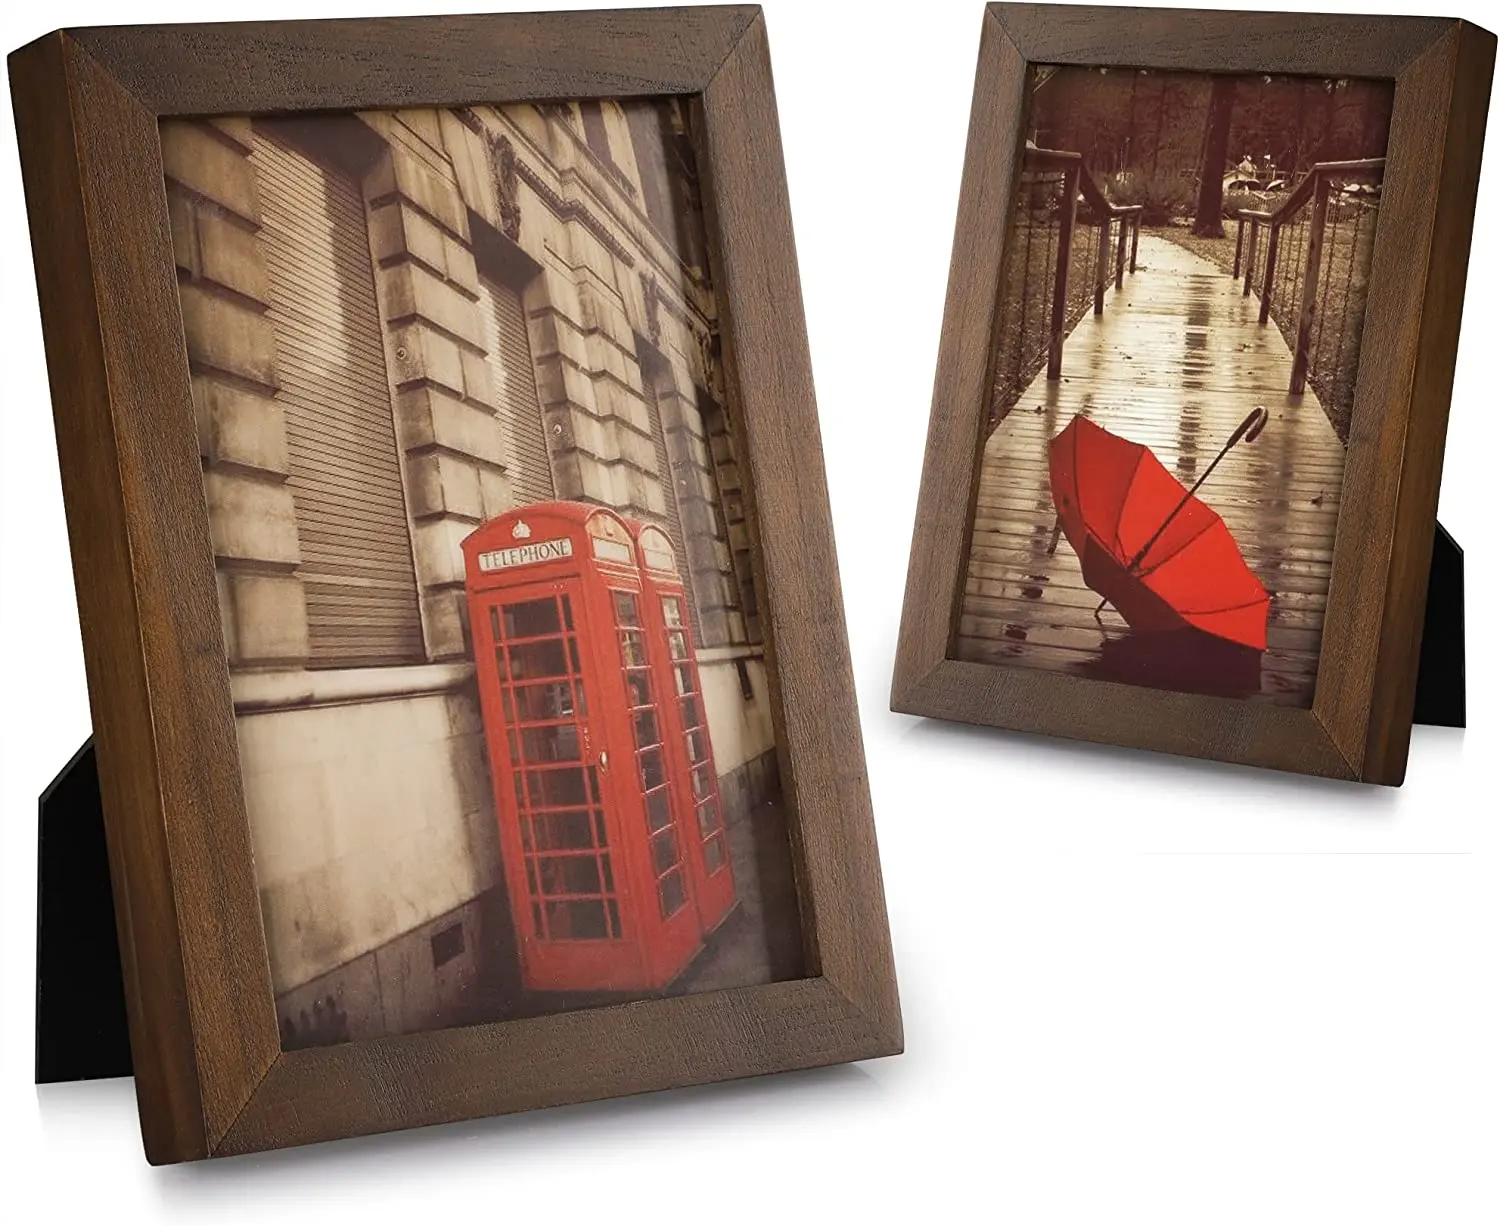 Moldura de madeira natural para fotos, moldura de parede marrom para mesa ou parede, com vidro real